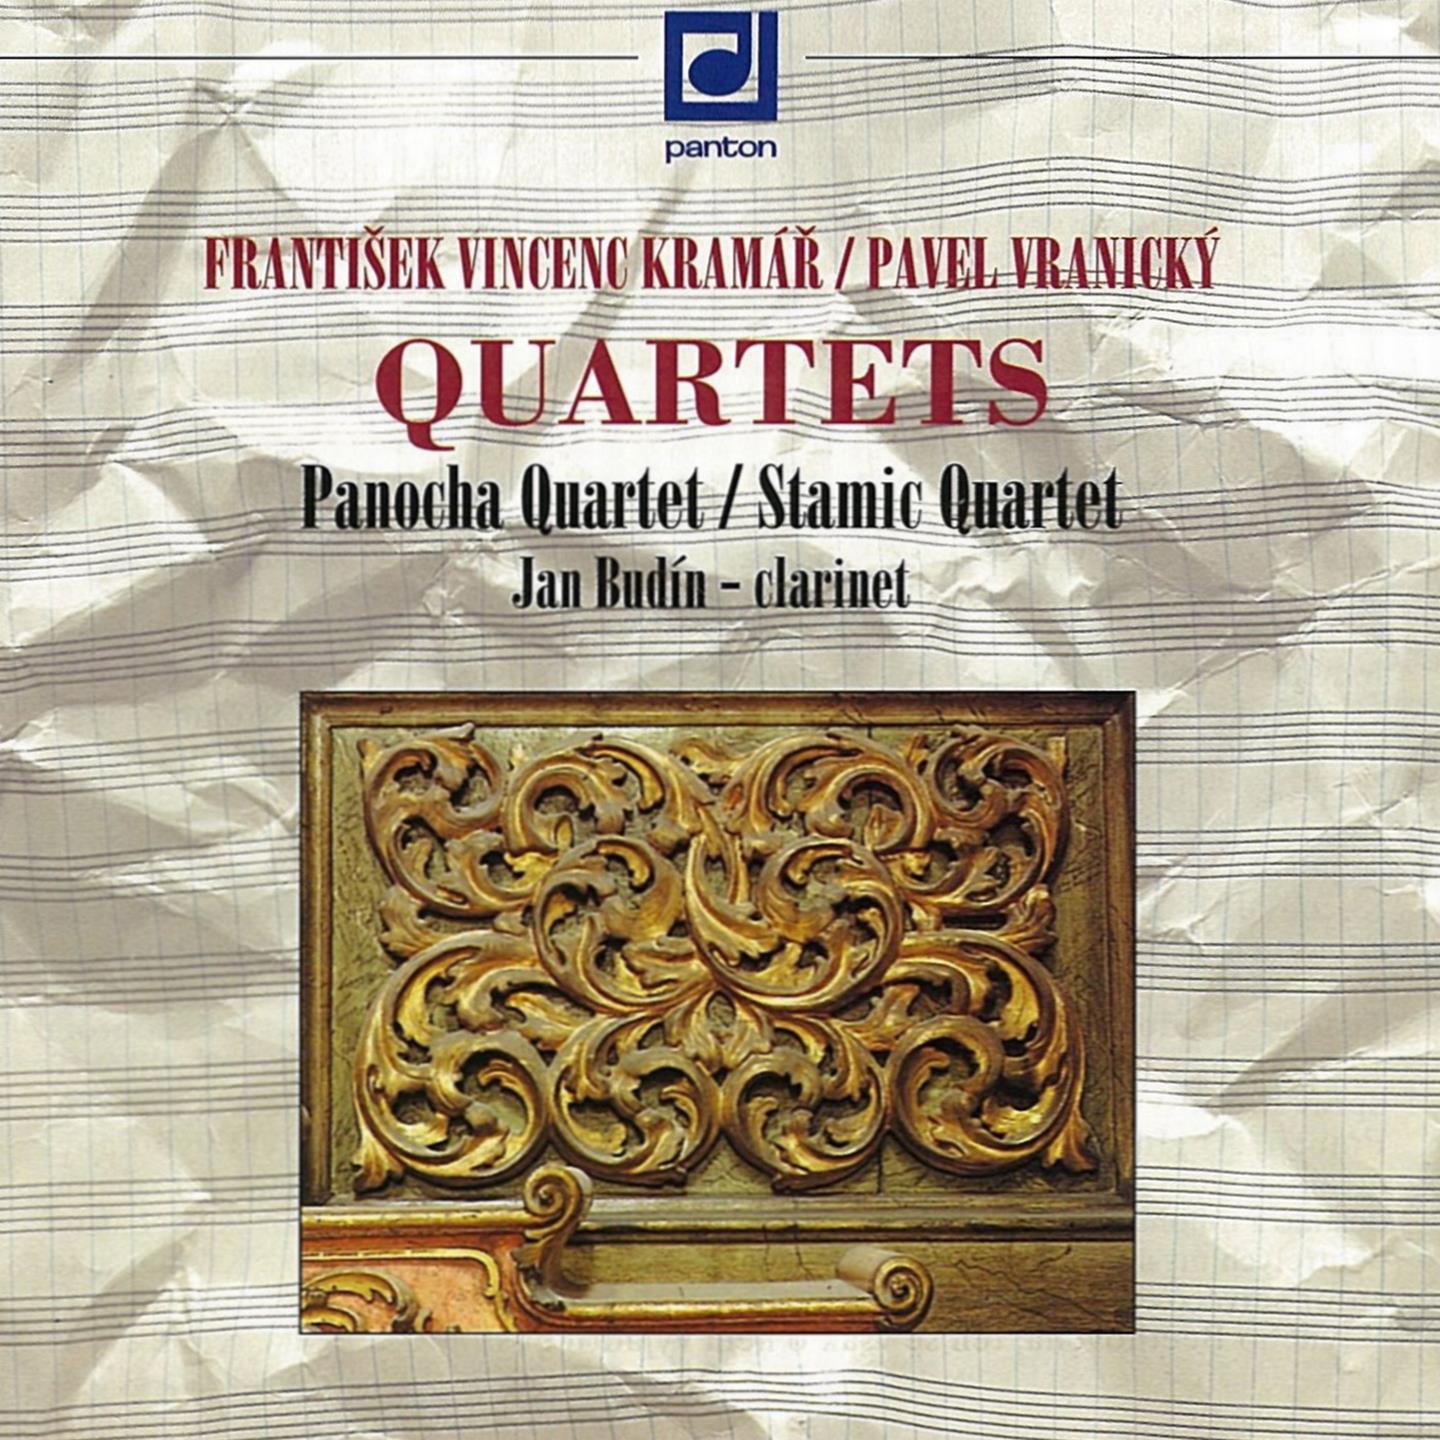 Clarinet Quartets, Op. 21, No. 2 in E-Flat Major, Op. 21: III. Romanza